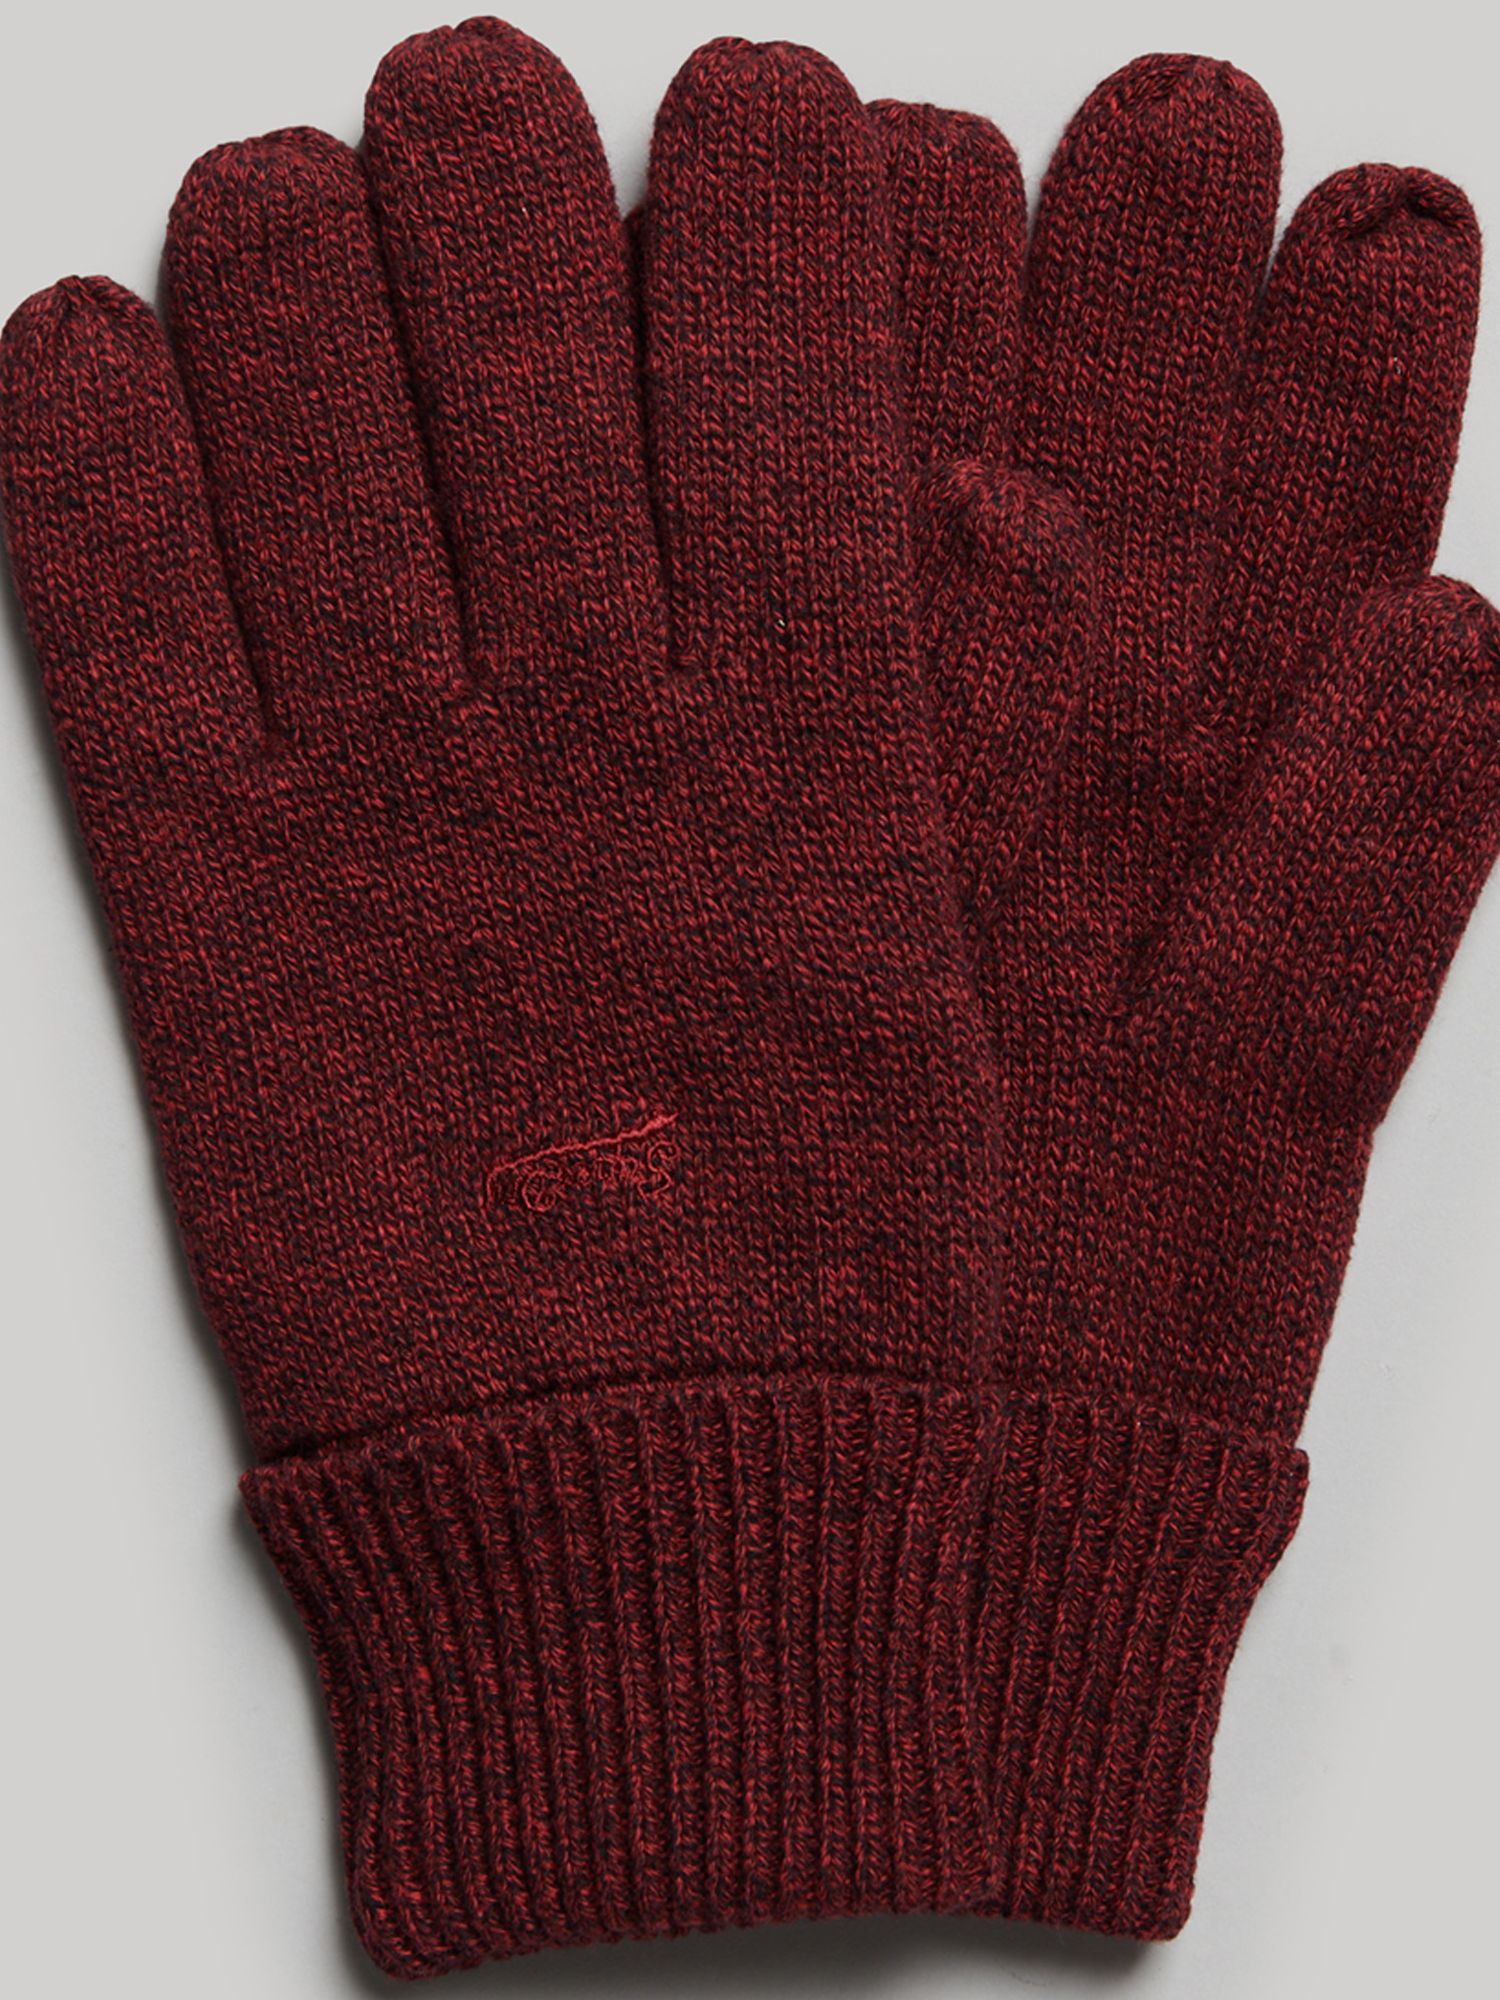 & Logo Partners Grit at Lewis Red Dark Gloves, Superdry Vintage John